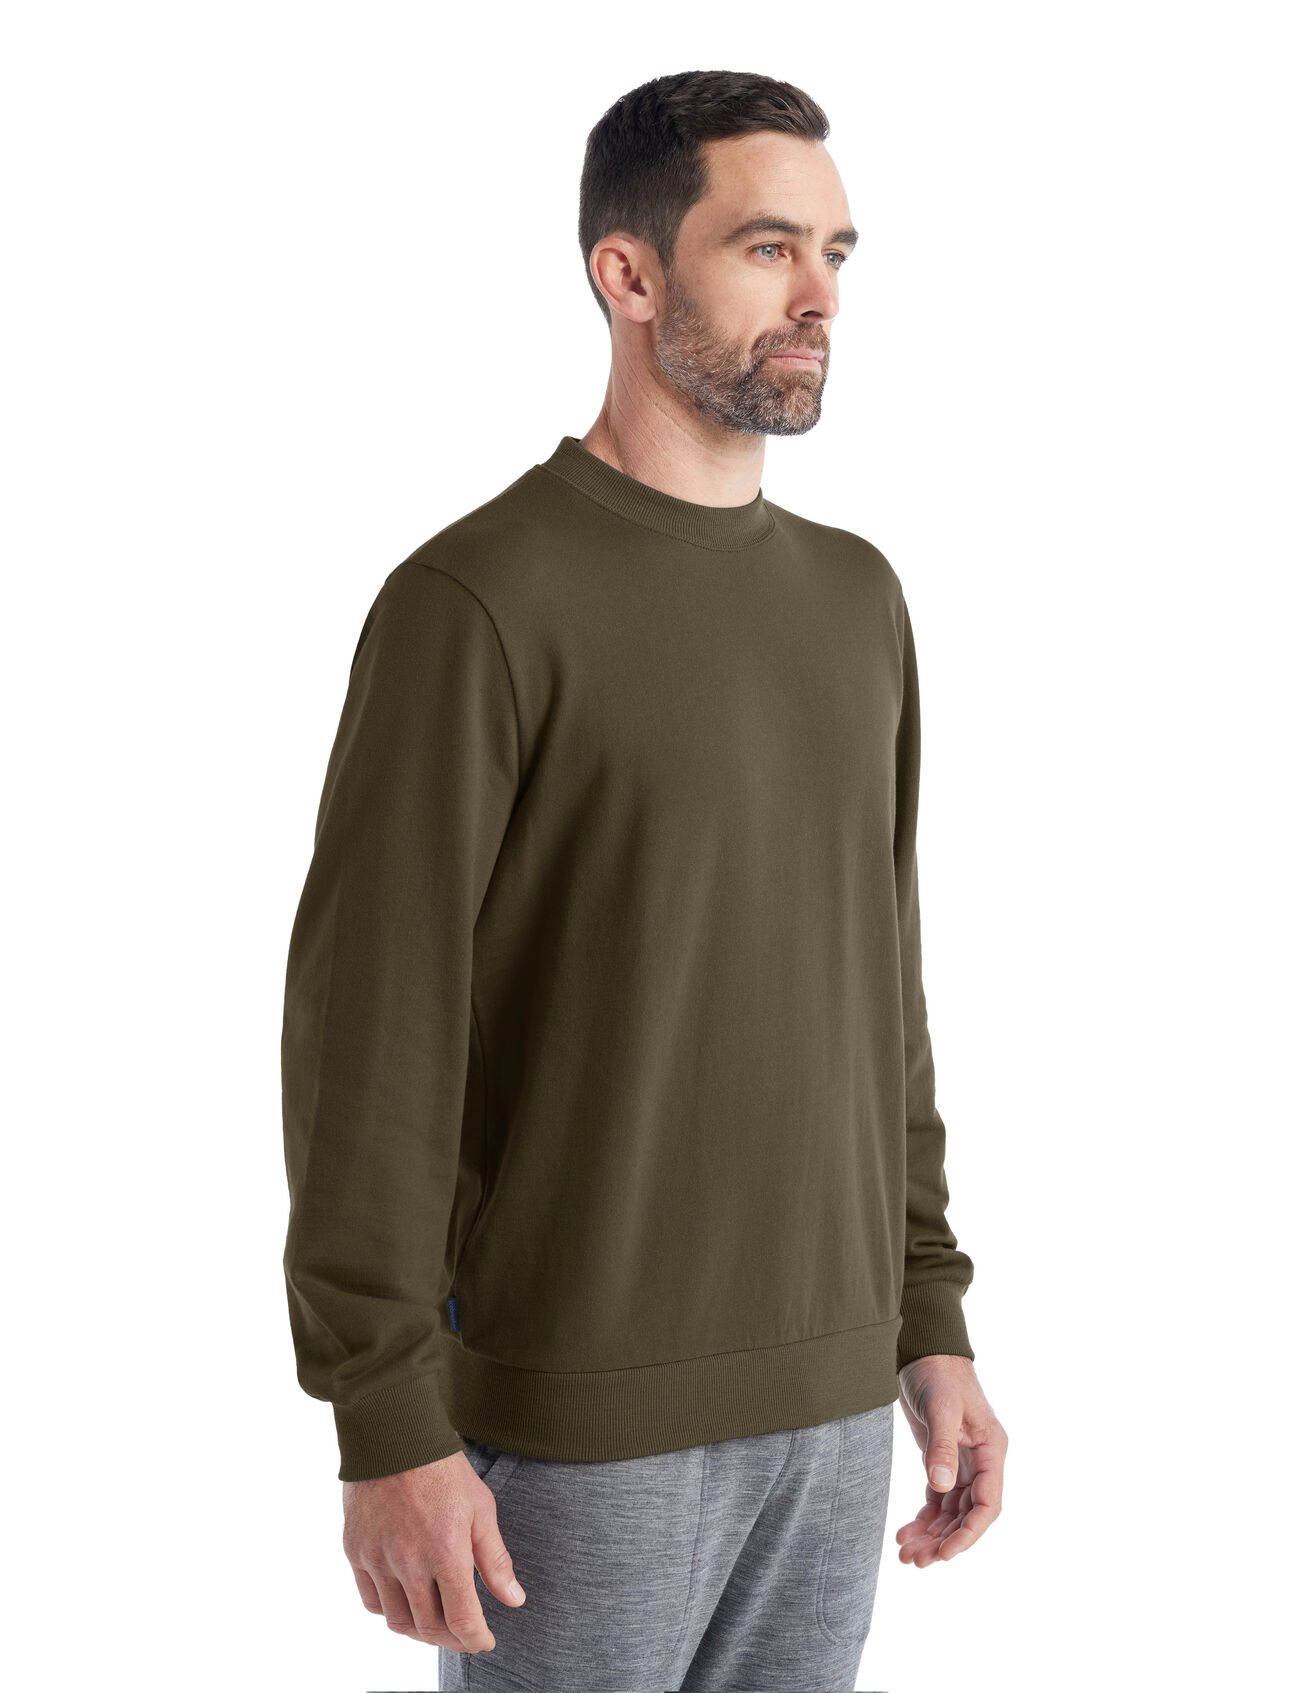 Herr Shifter långärmad sweatshirt i merino Shifter långärmad sweatshirt är en klassisk och snygg pullover som är tillverkad av mjuk och bekväm frotté i 100% merino. Det är ett mångsidigt lagerplagg för alla slags vardagsäventyr.